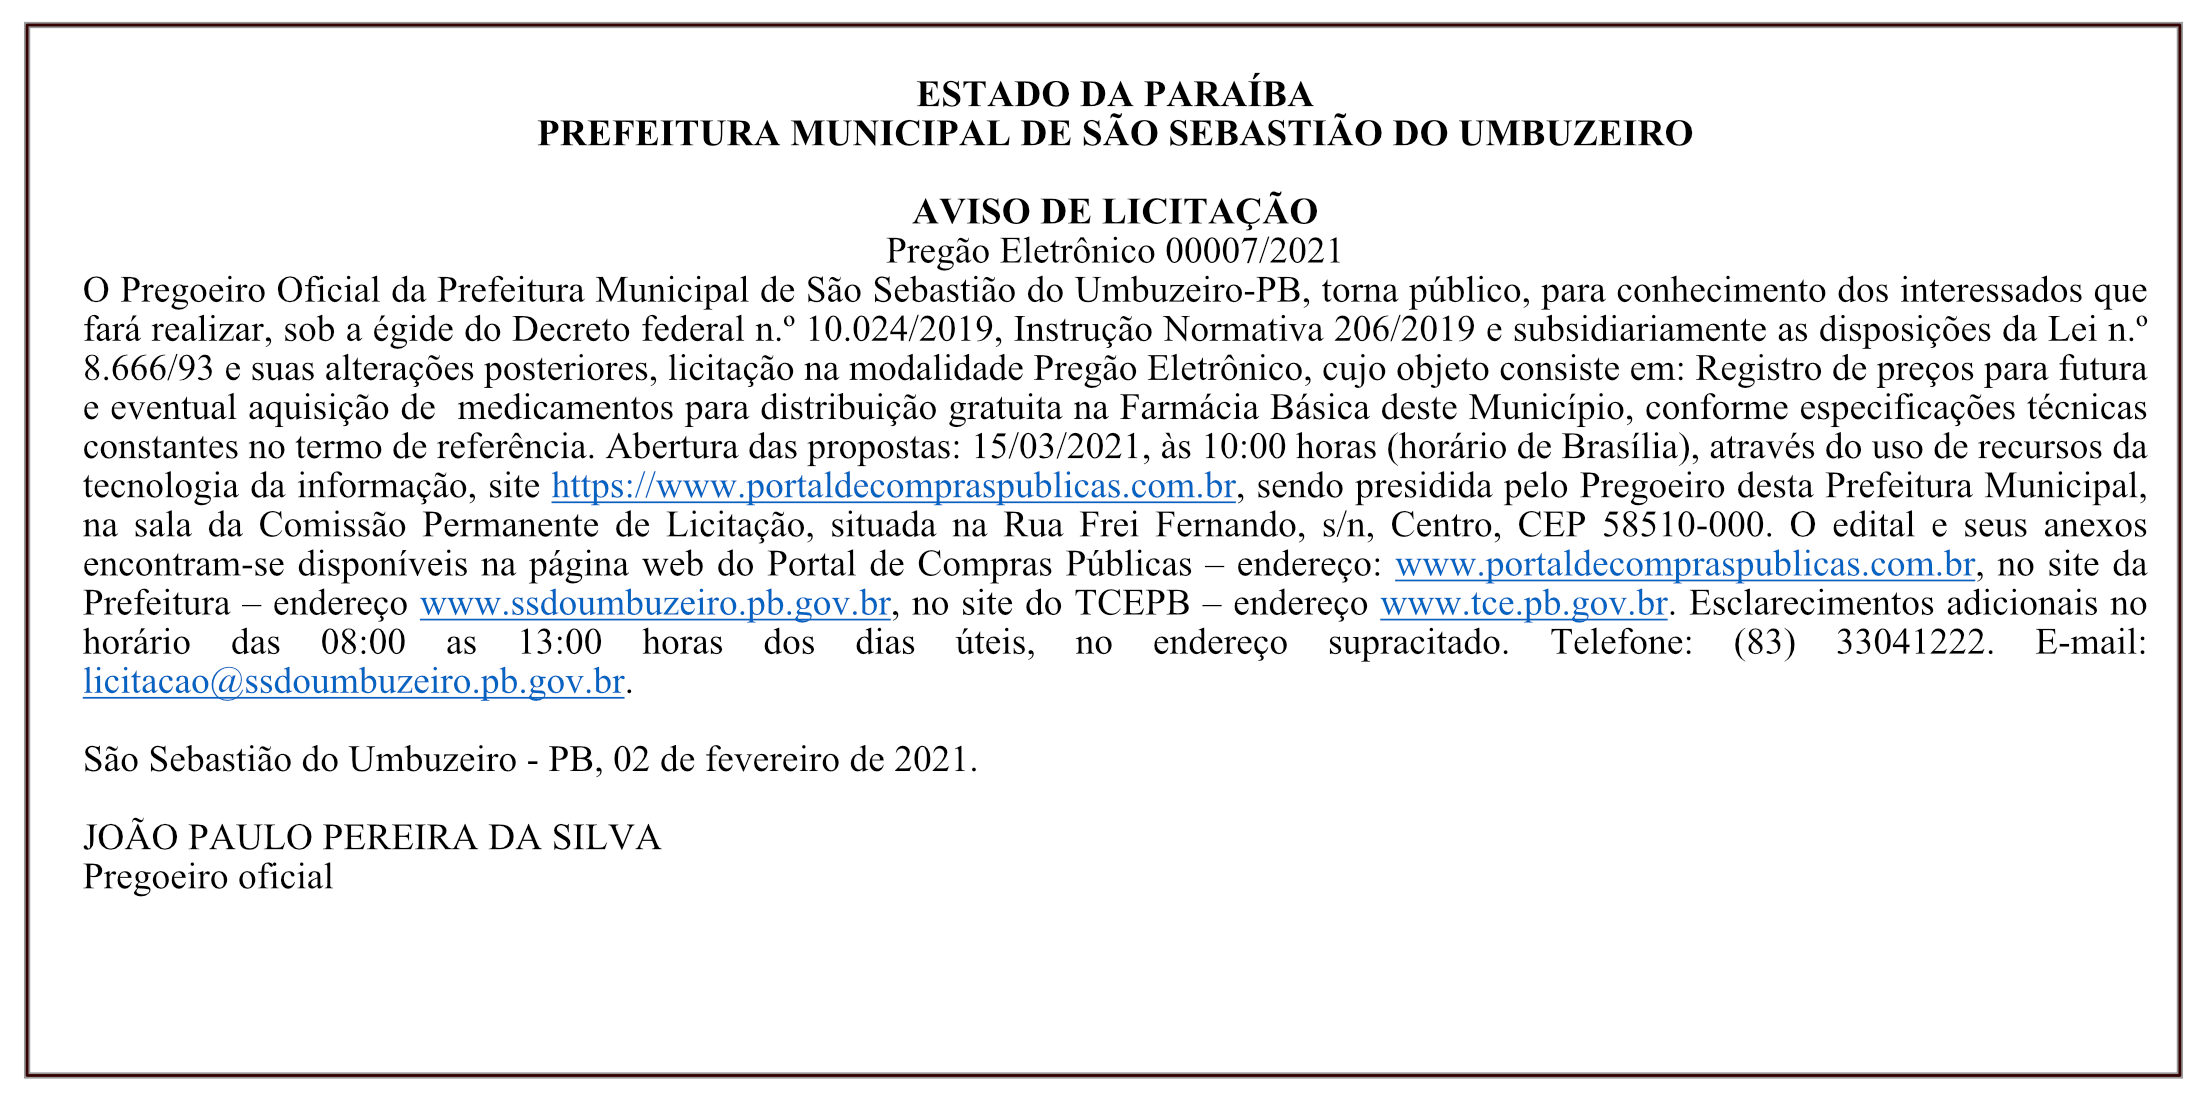 PREFEITURA MUNICIPAL DE SÃO SEBASTIÃO DO UMBUZEIRO – AVISO DE LICITAÇÃO – PREGÃO ELETRÔNICO 00007/2021